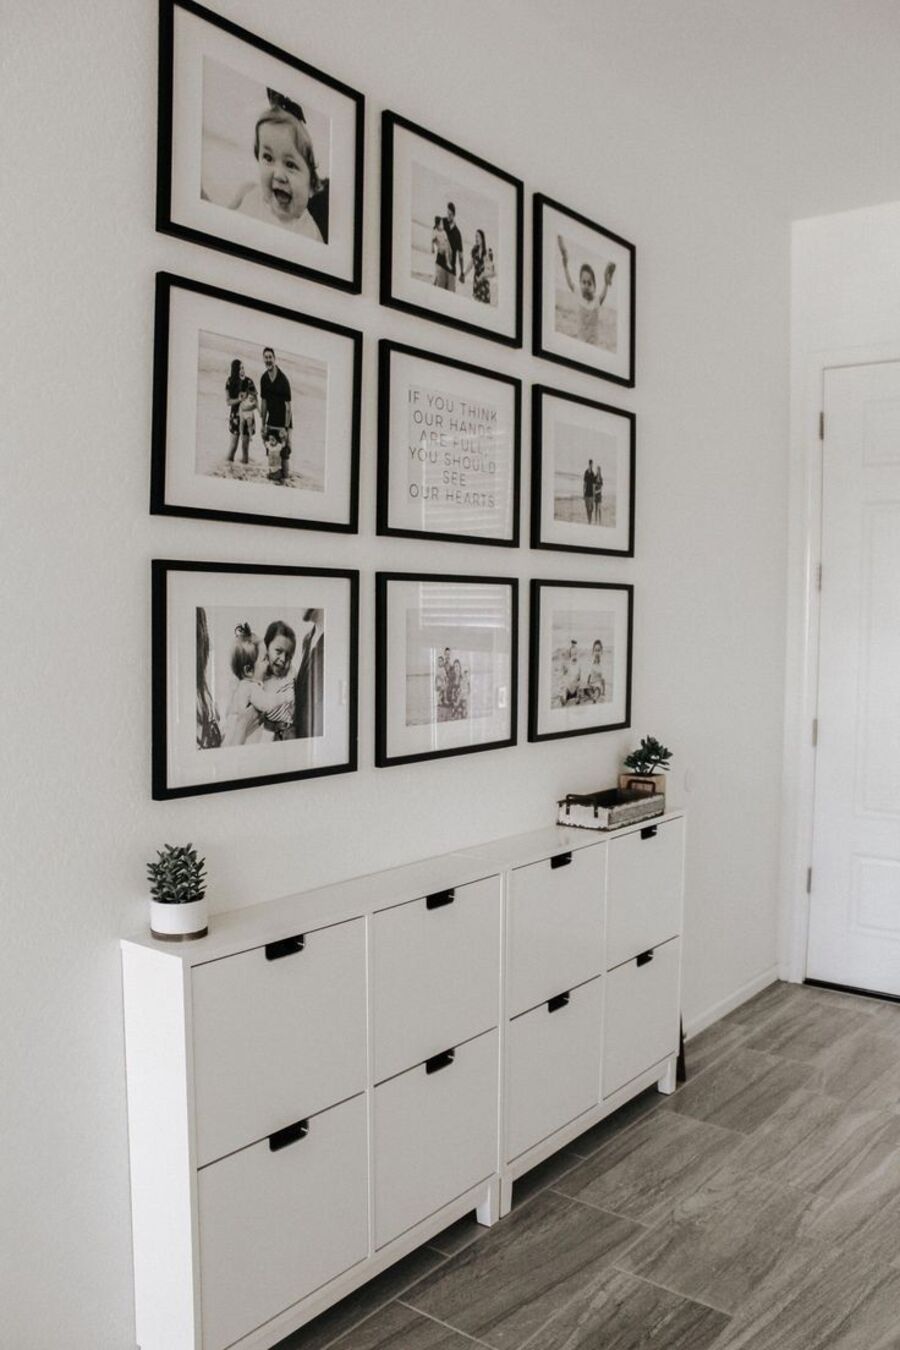 Pasillo de paredes blancas decorado con 9 fotografías en blanco y negro, enmarcadas en marcos negros. Debajo hay un mueble zapatero blanco.